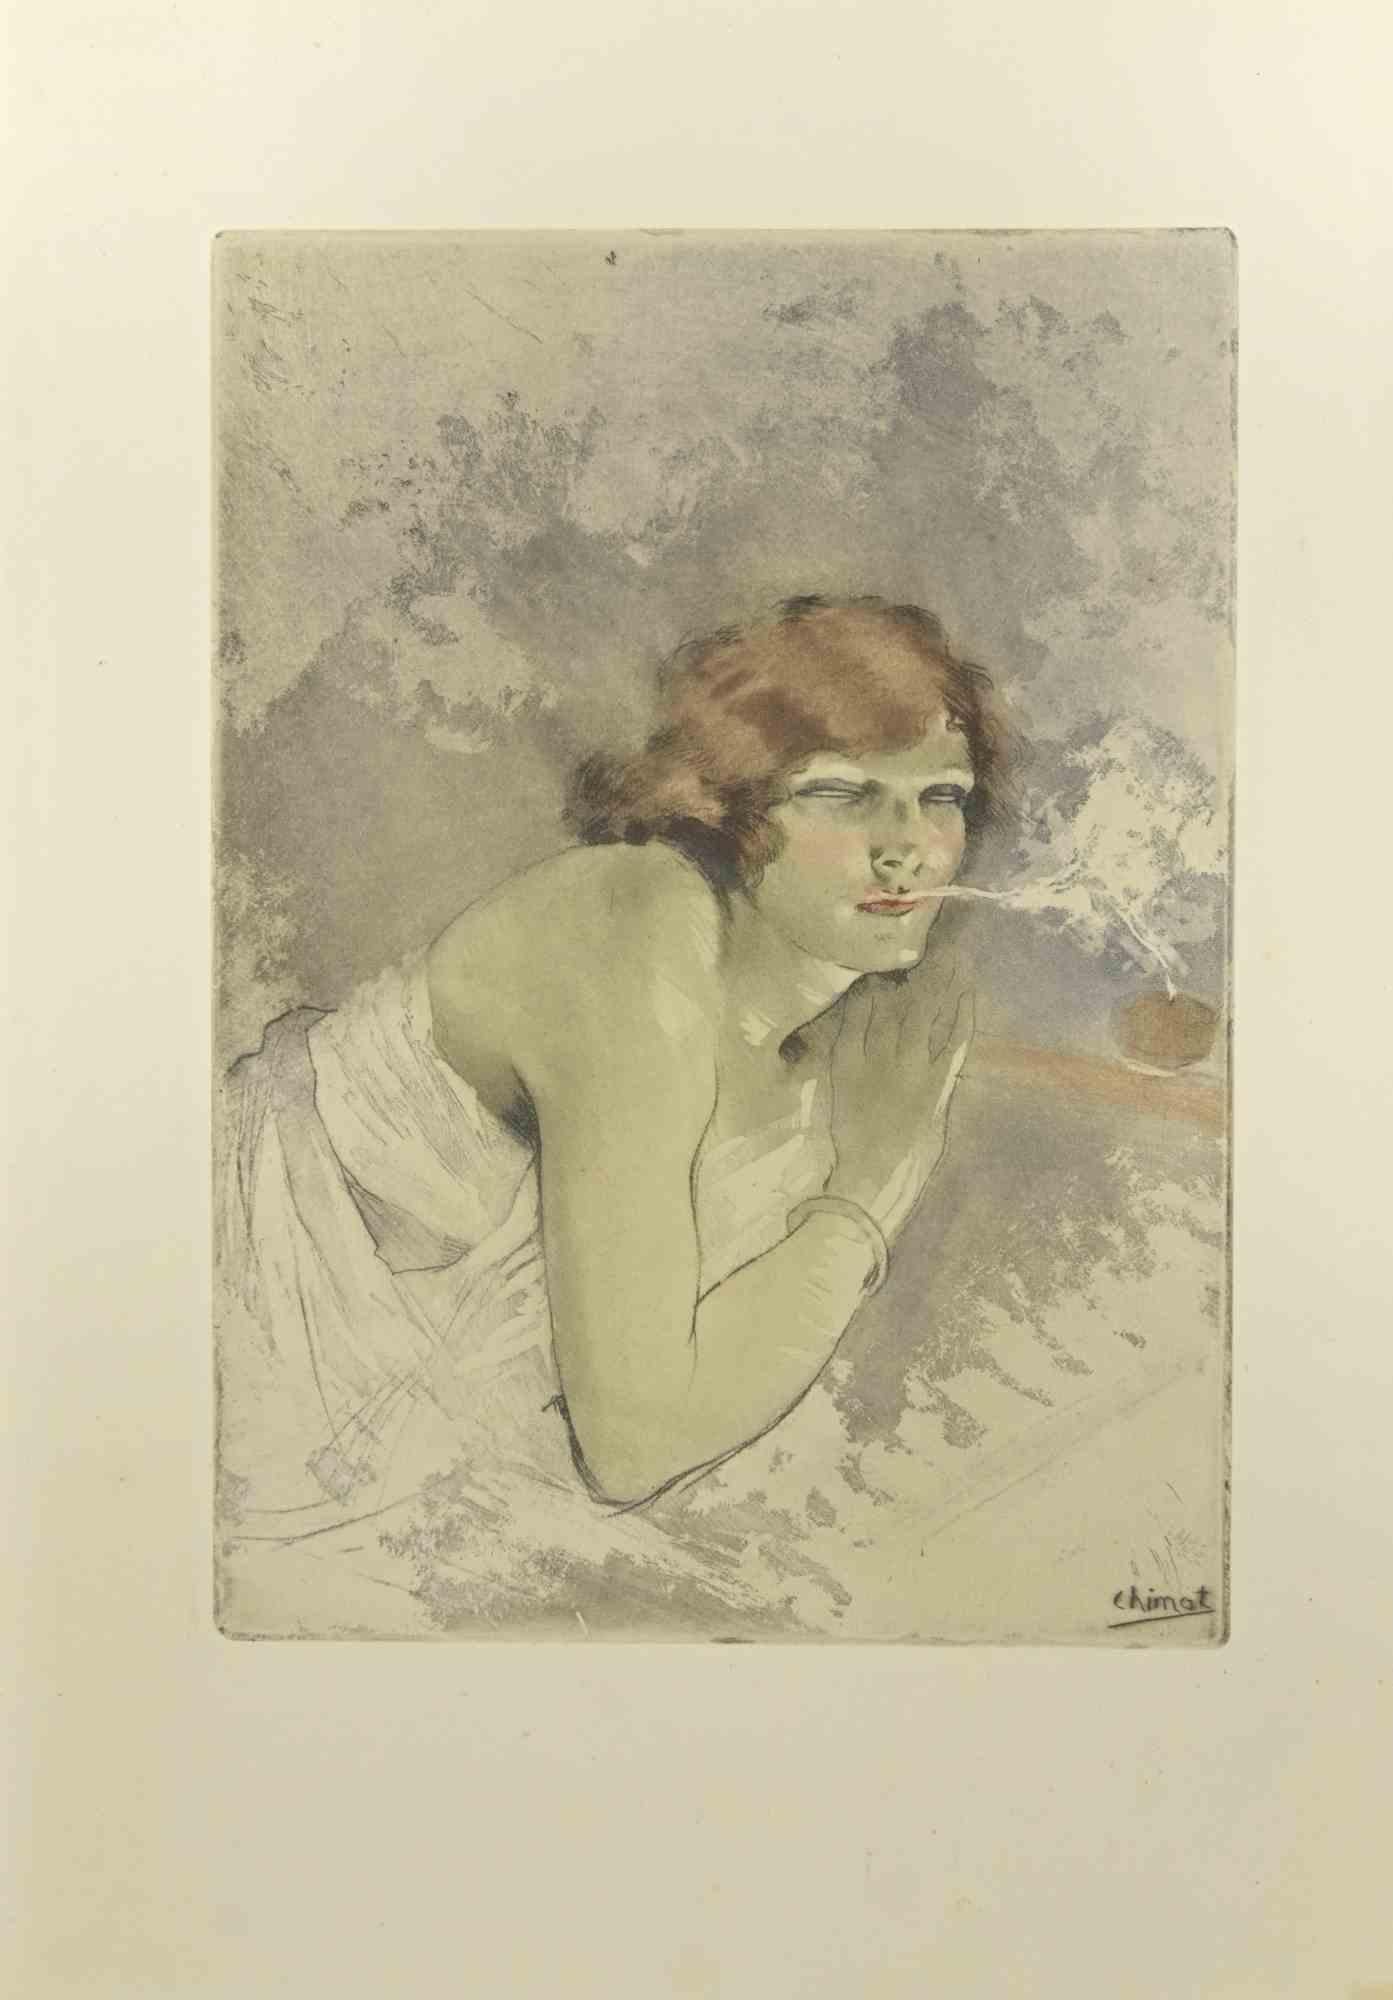 Das rauchende Mädchen –  Radierung von Edouard Chimot – 1930er-Jahre